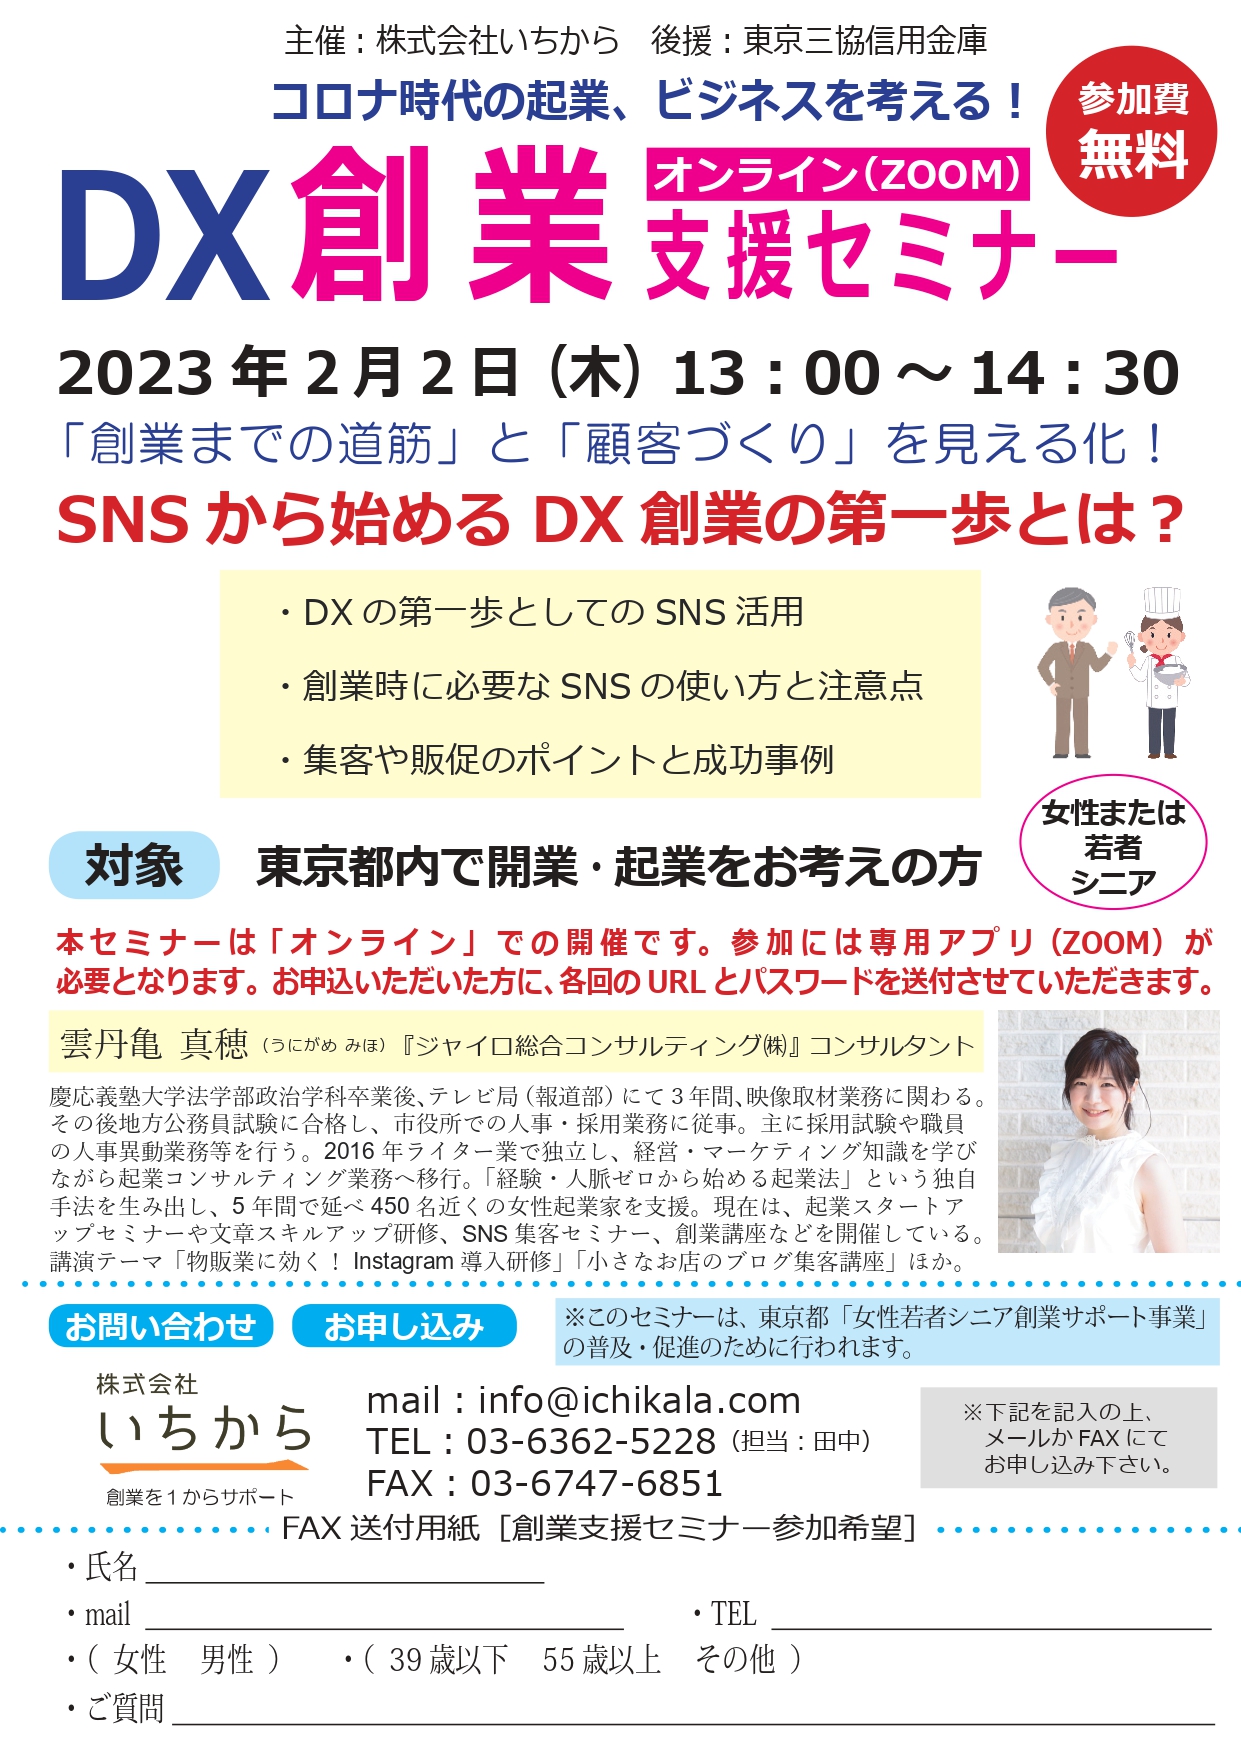 2月2日DX創業支援セミナー